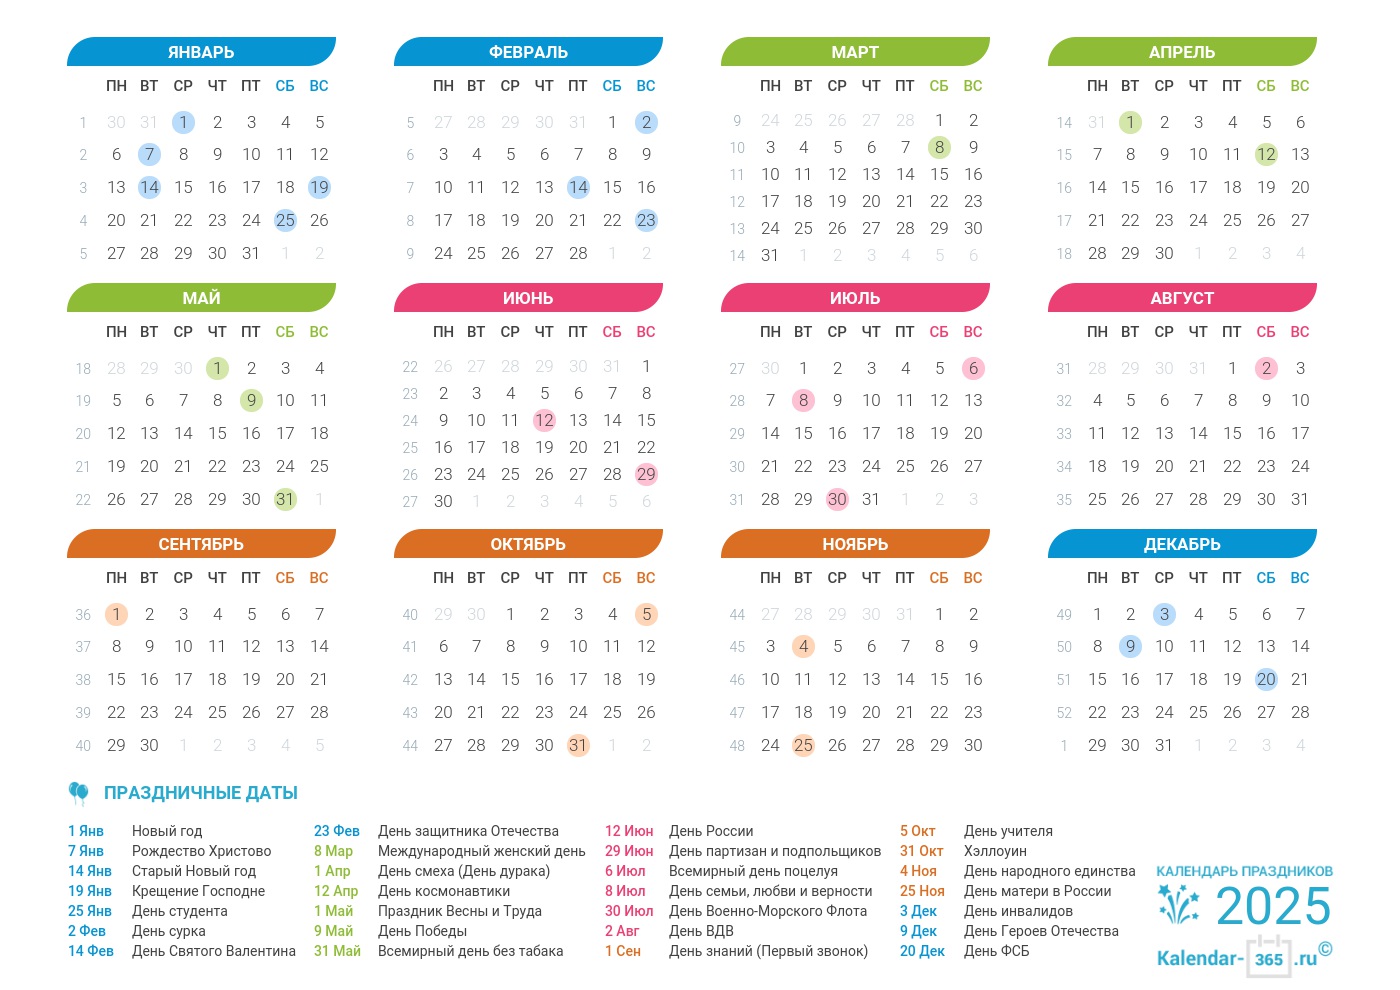 Праздники 2025 года: все актуальные праздники в разных странах